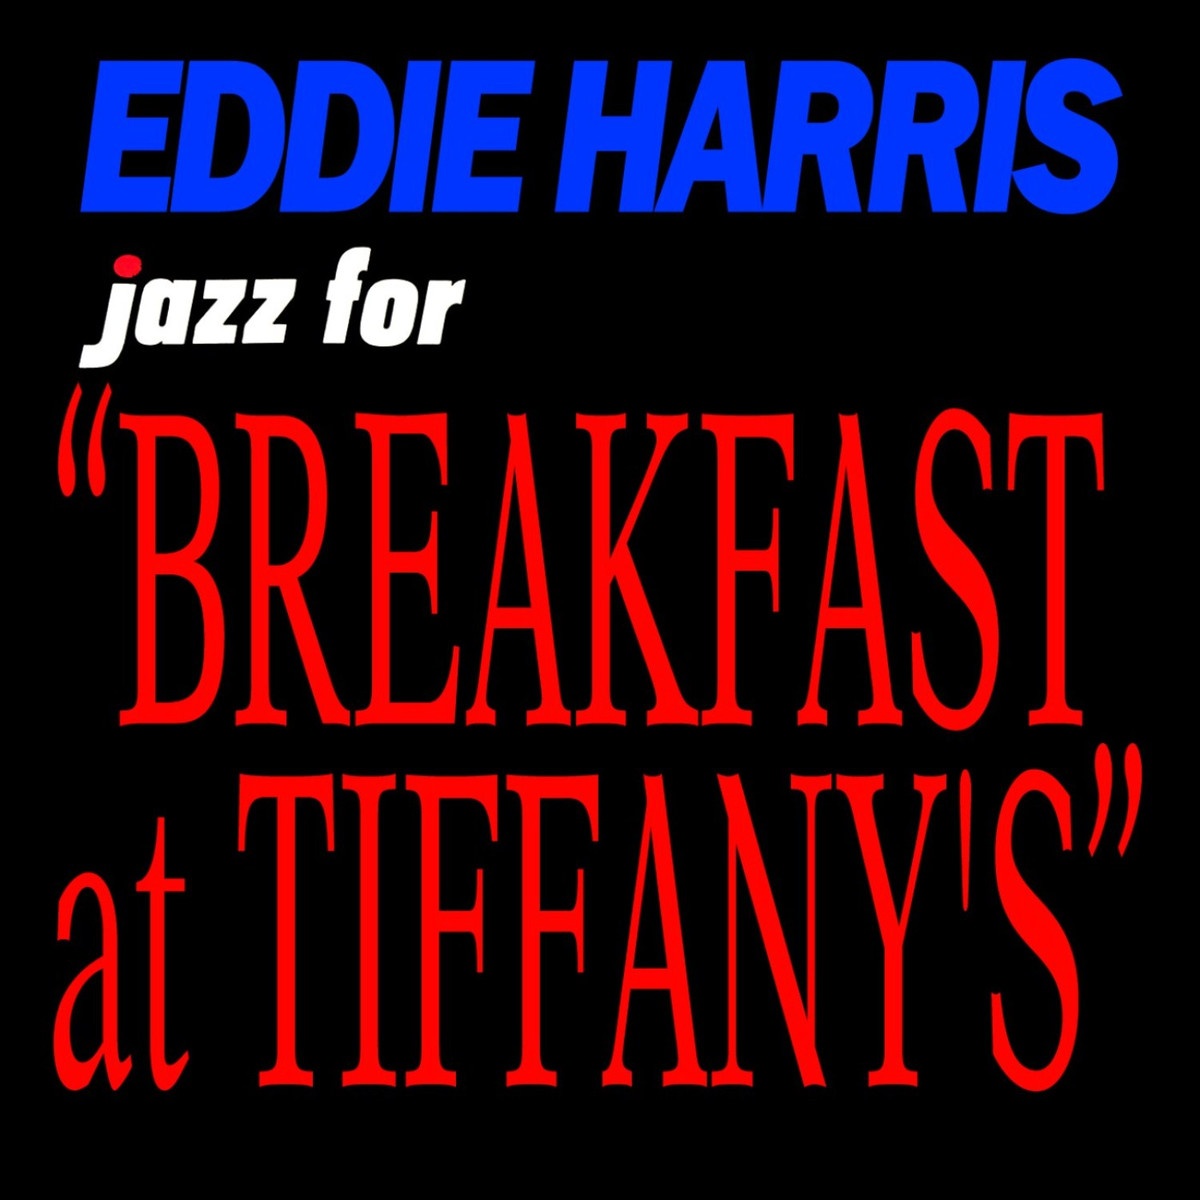 Jazz For Breakfast At Tiffany's